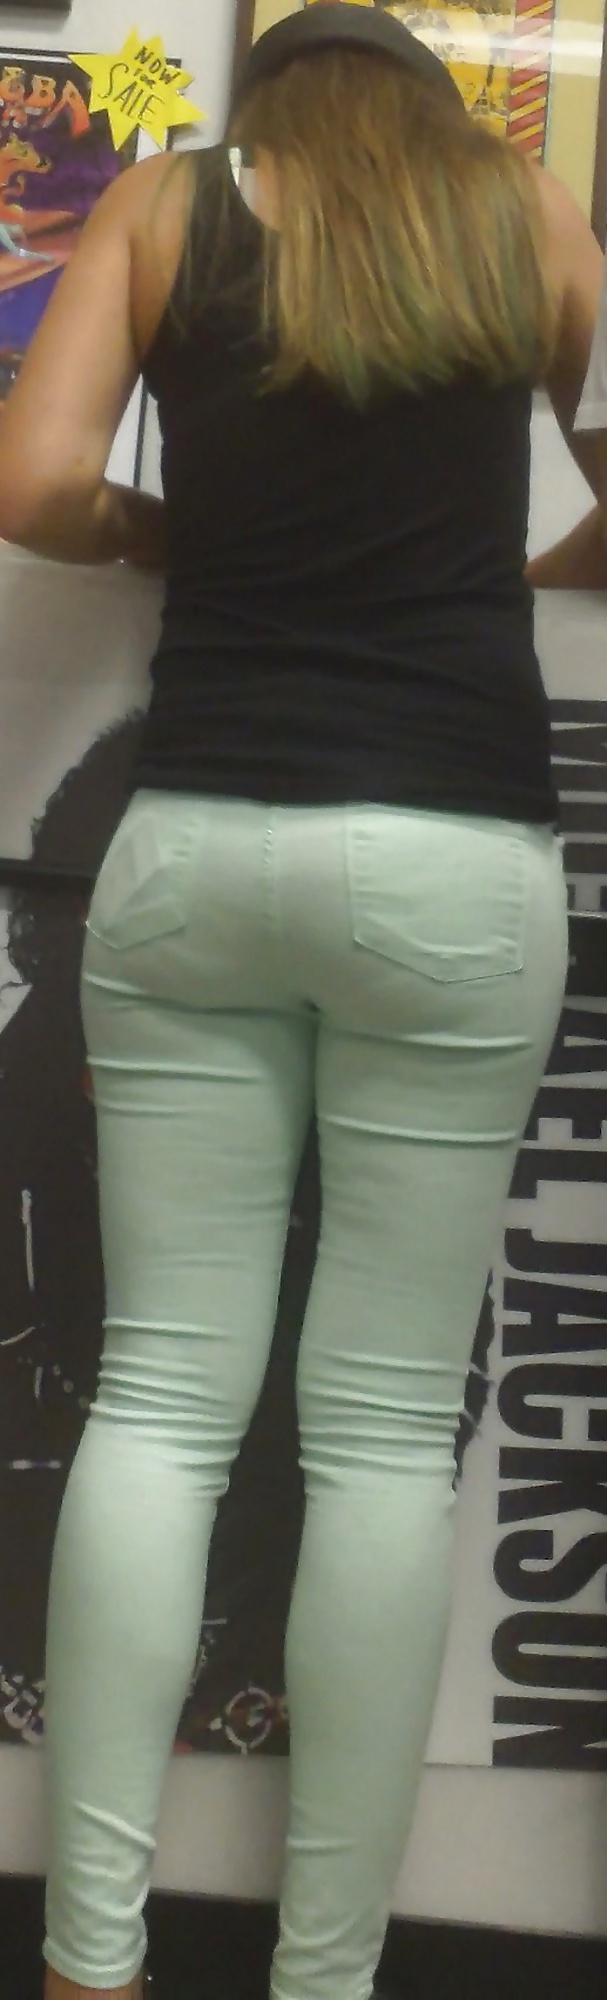 Popular teen girls ass & butt in jeans Part 5 #28730997